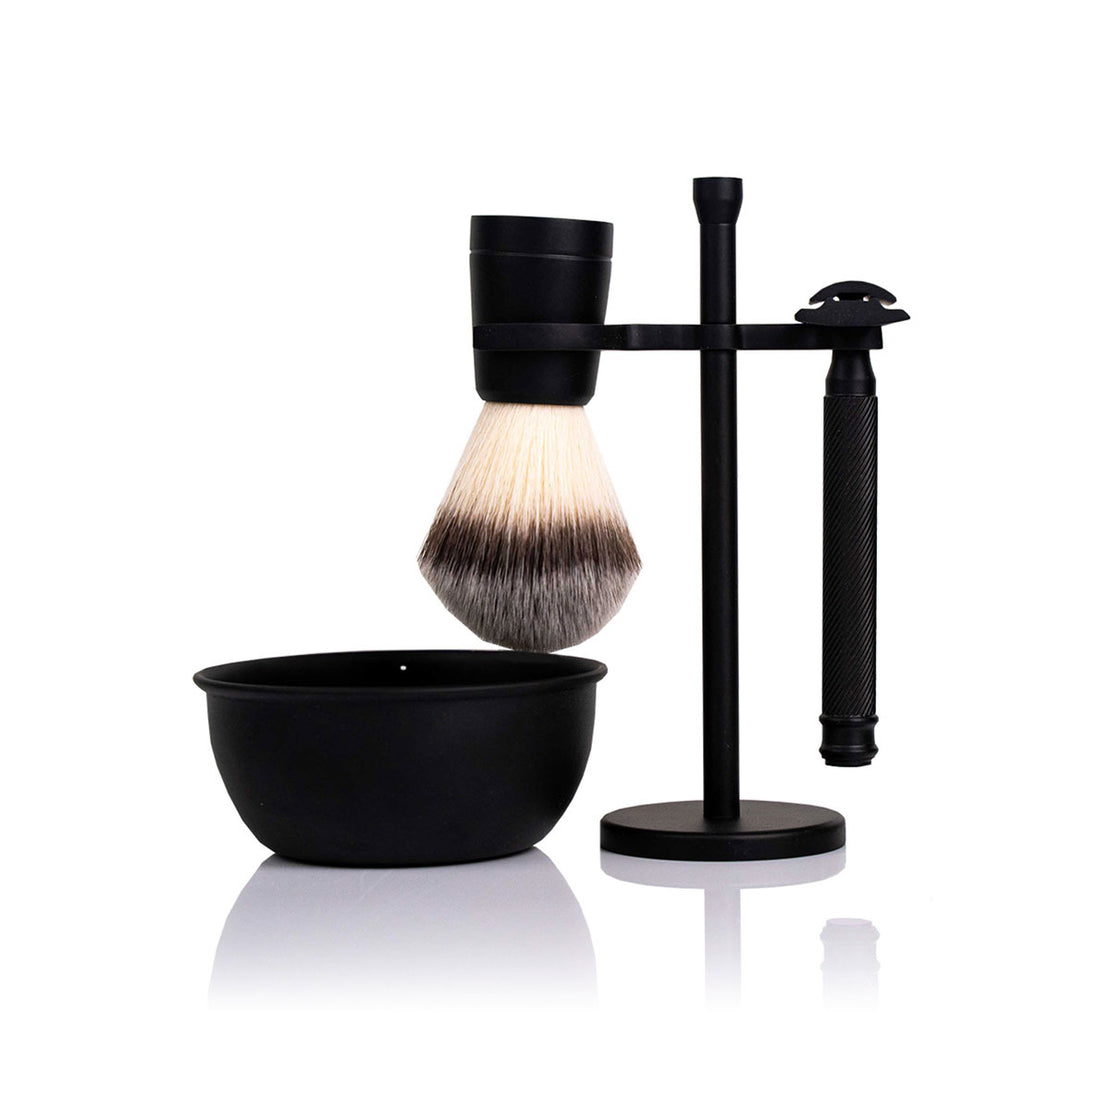 Shaving set for wet shaving | Safety razor, shaving brush, shaving bowl & free shaving soap